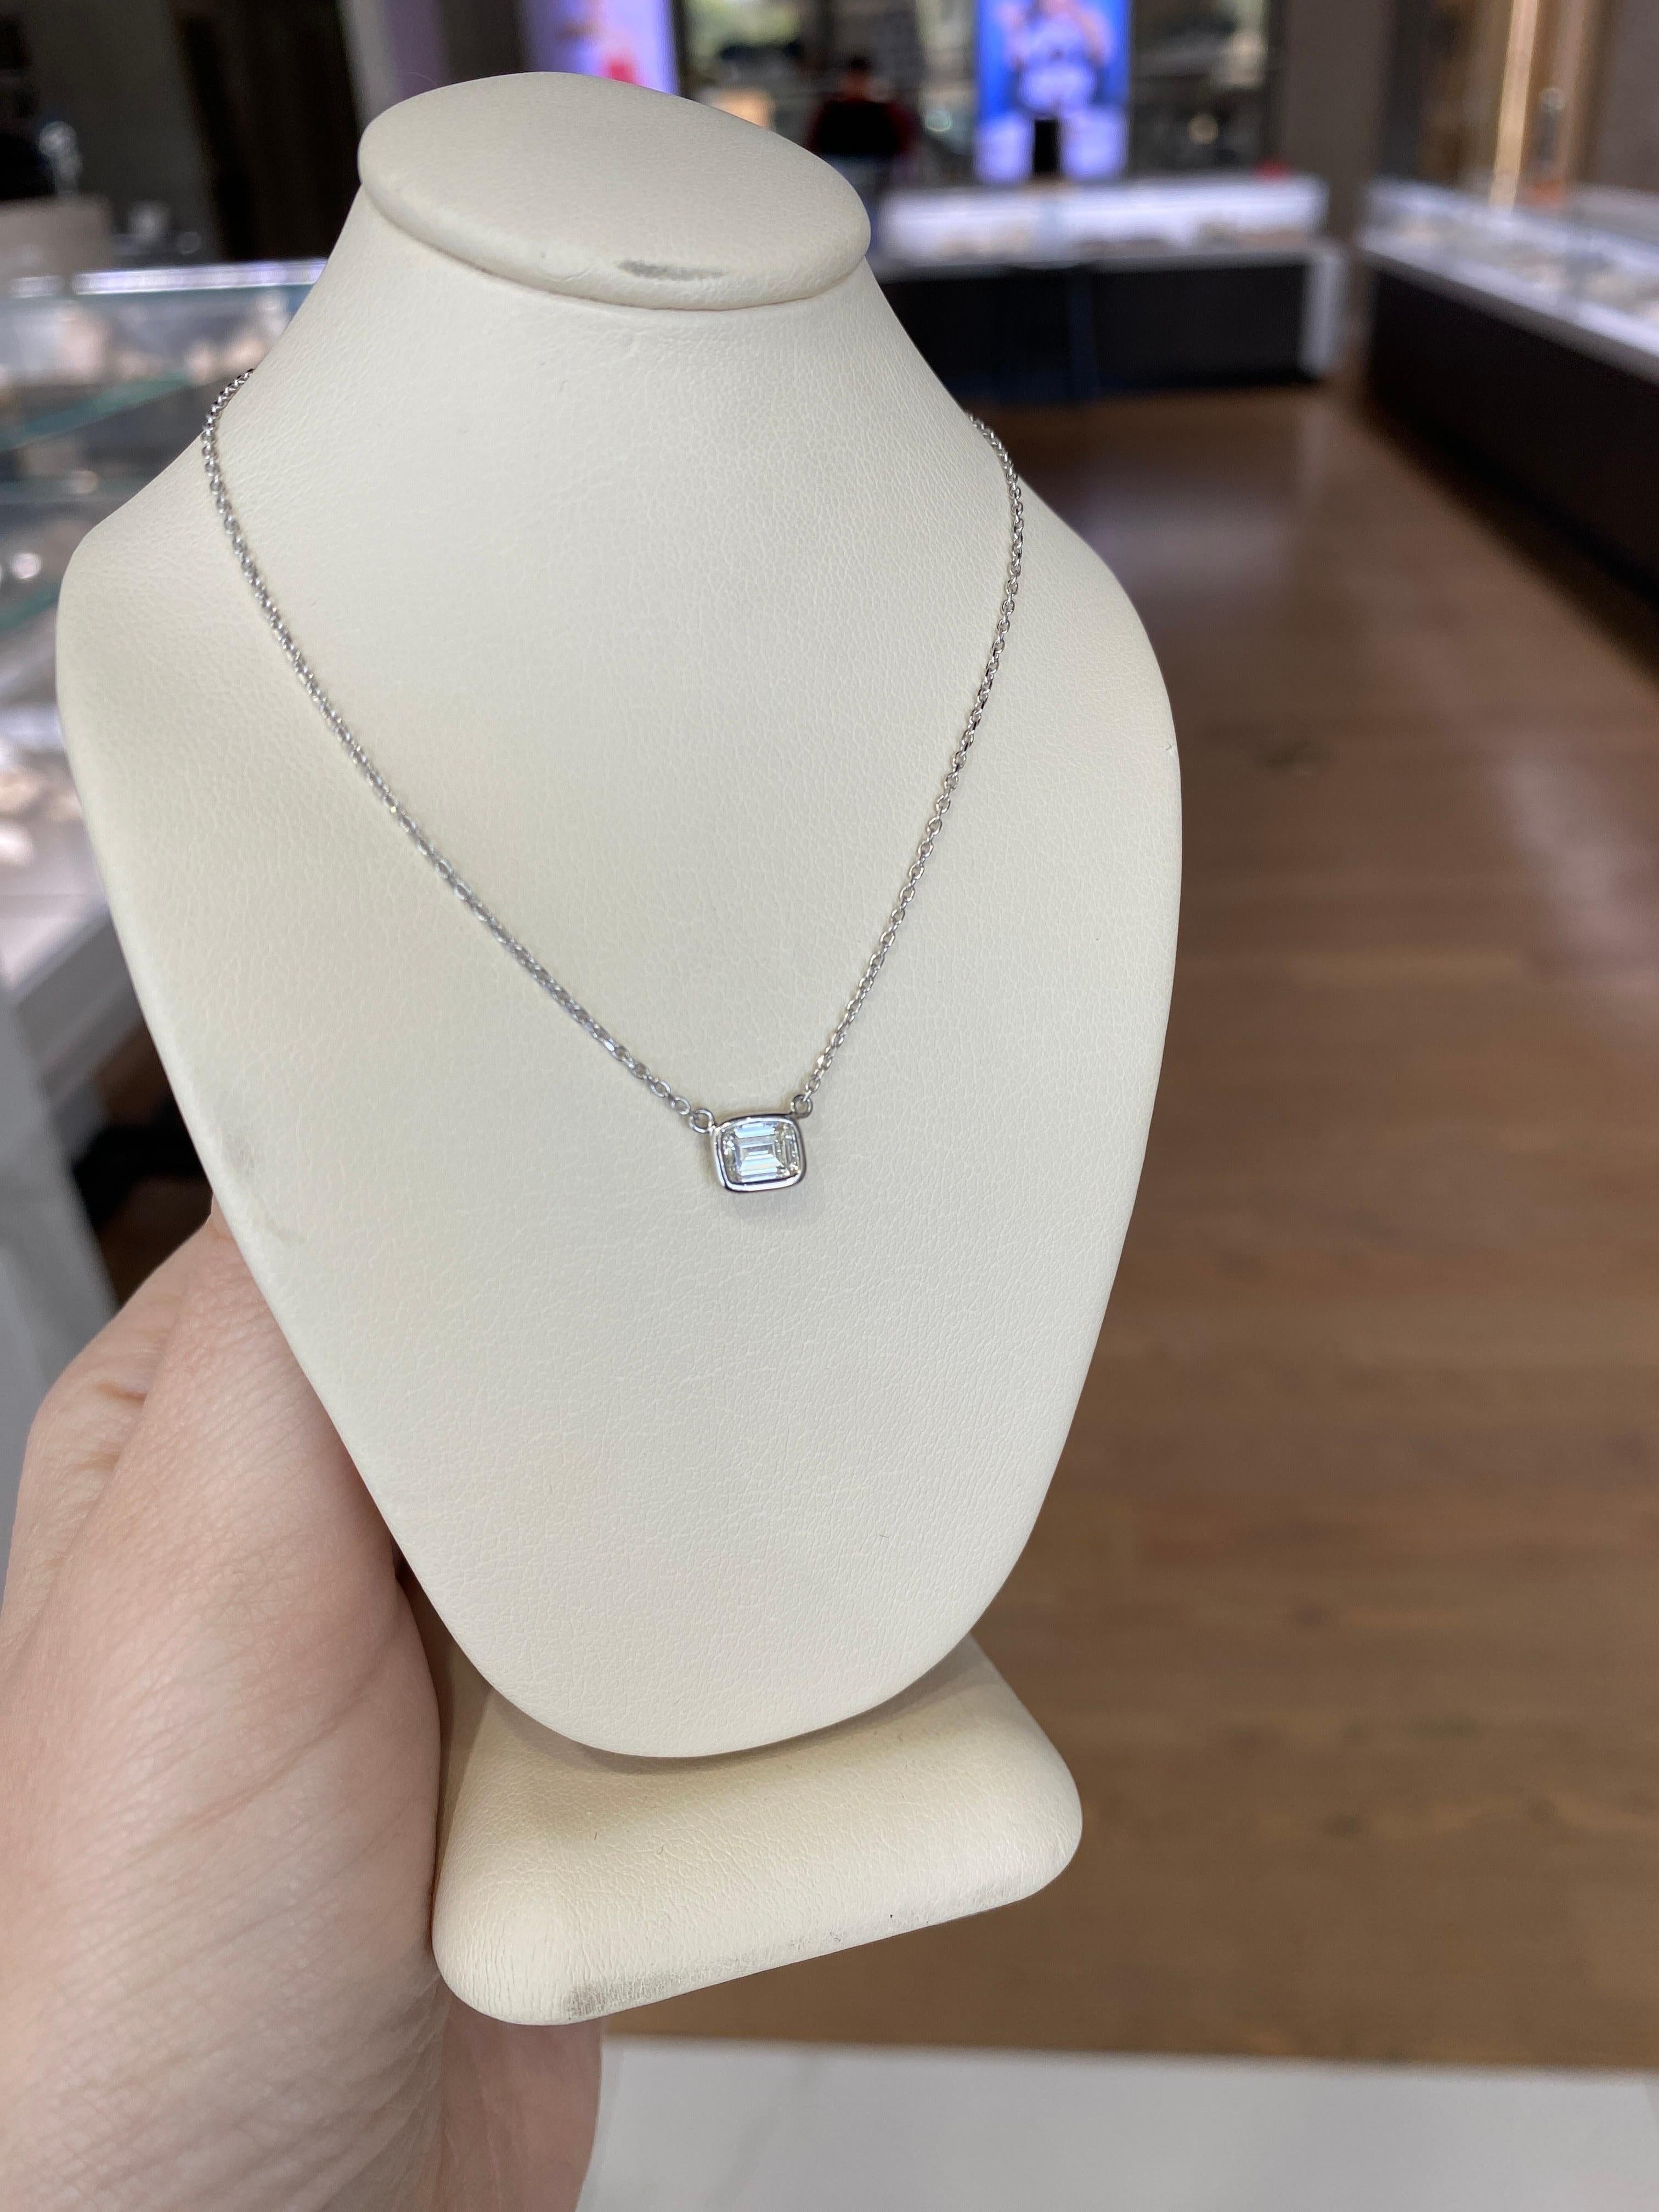 0.44 Carat Natural Emerald Cut Bezel Set Diamond Pendant Necklace 14k White Gold For Sale 10